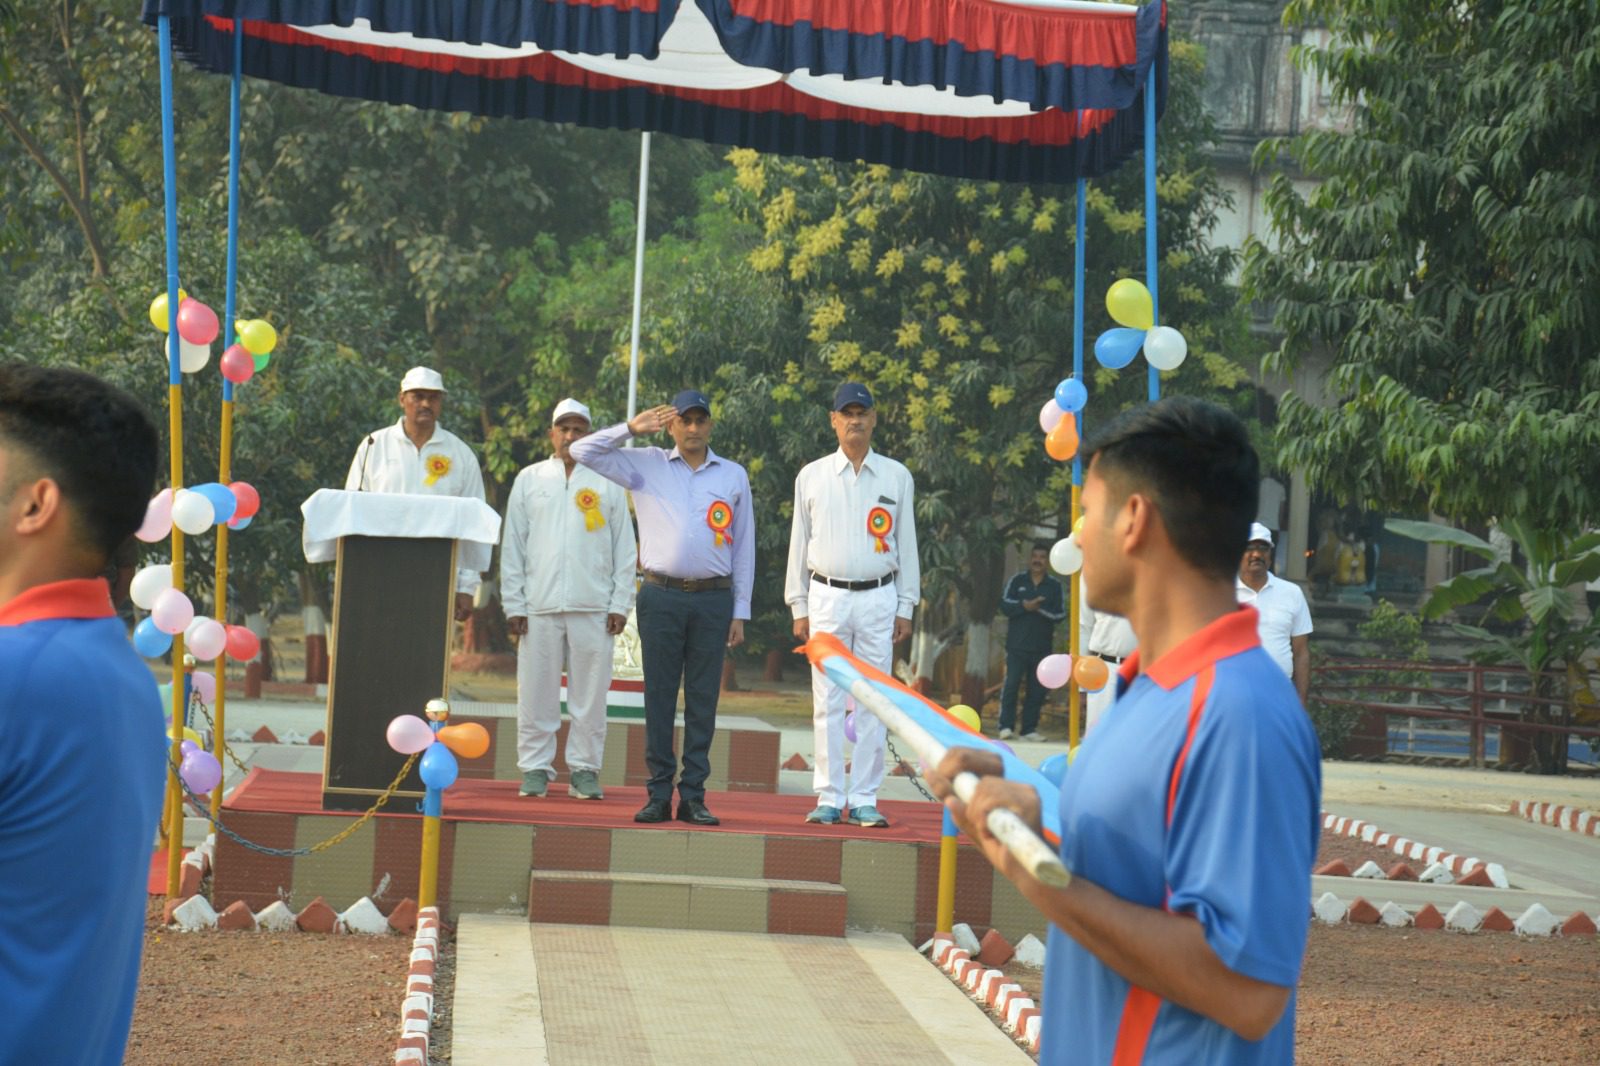 रामनगर पीएसी में 28वीं अंतर वाहिनी खेल प्रतियोगिता का आयोजन